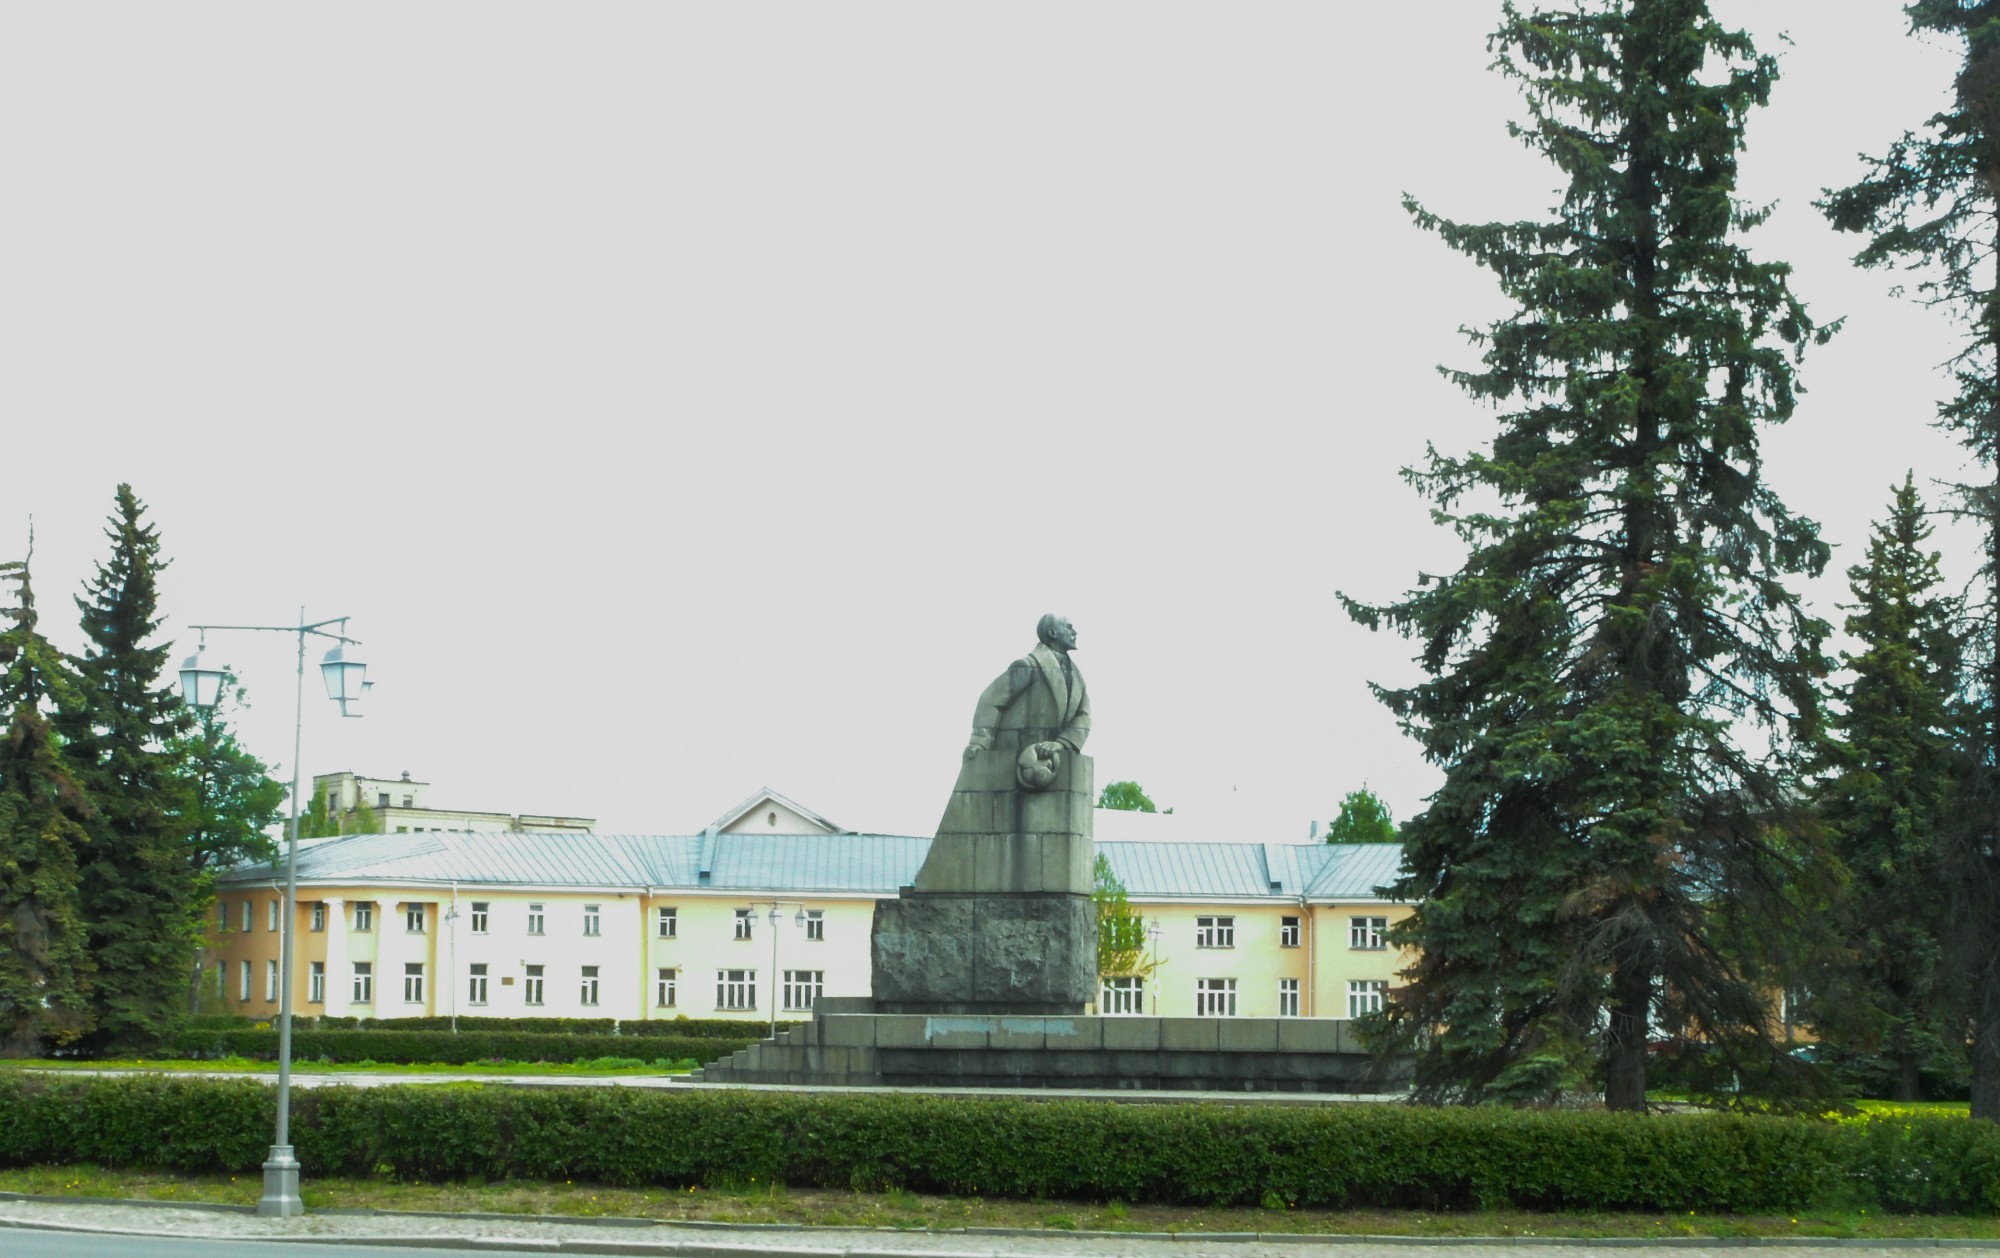 Памятник Ленину, расположенный на одноименной площади в Петрозаводске. Это единственная работа из камня известного скульптора Матвея Генриховича Манизера